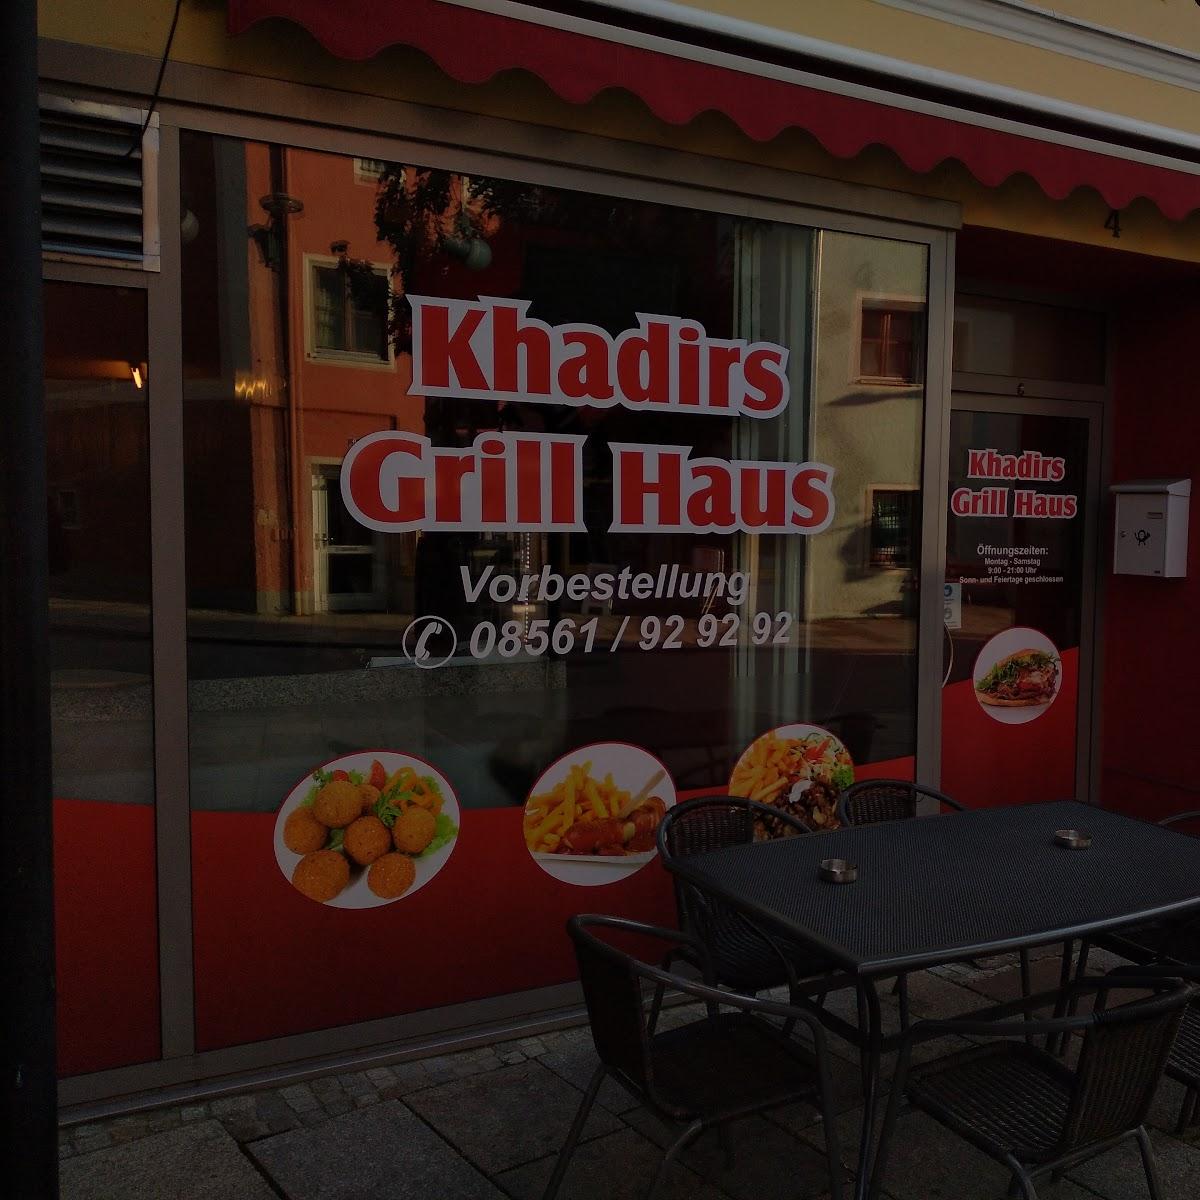 Restaurant "Grill Haus" in Pfarrkirchen